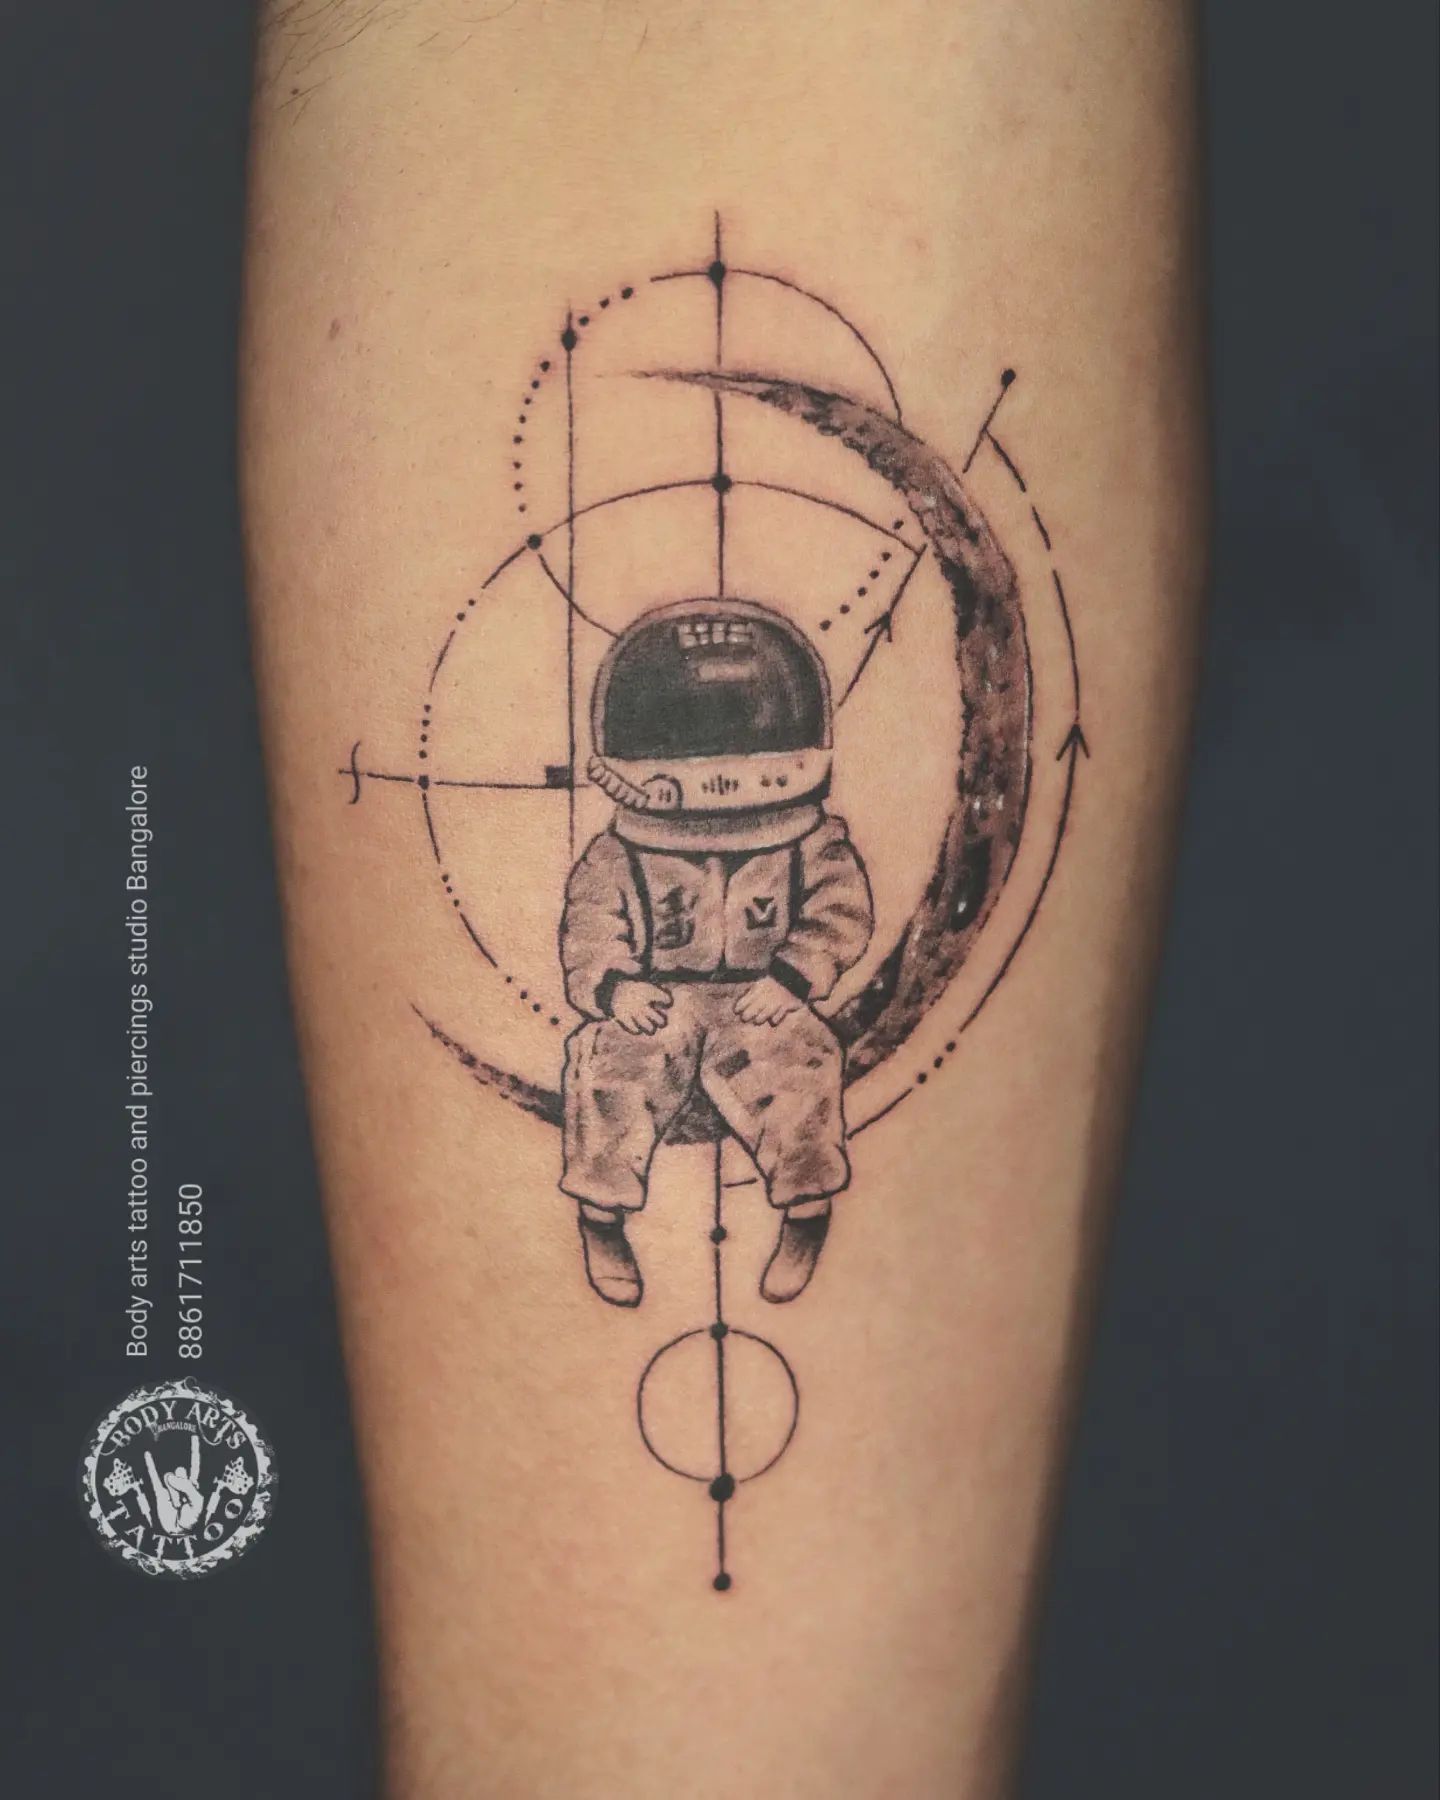 Tatuaje de luna y astronauta.